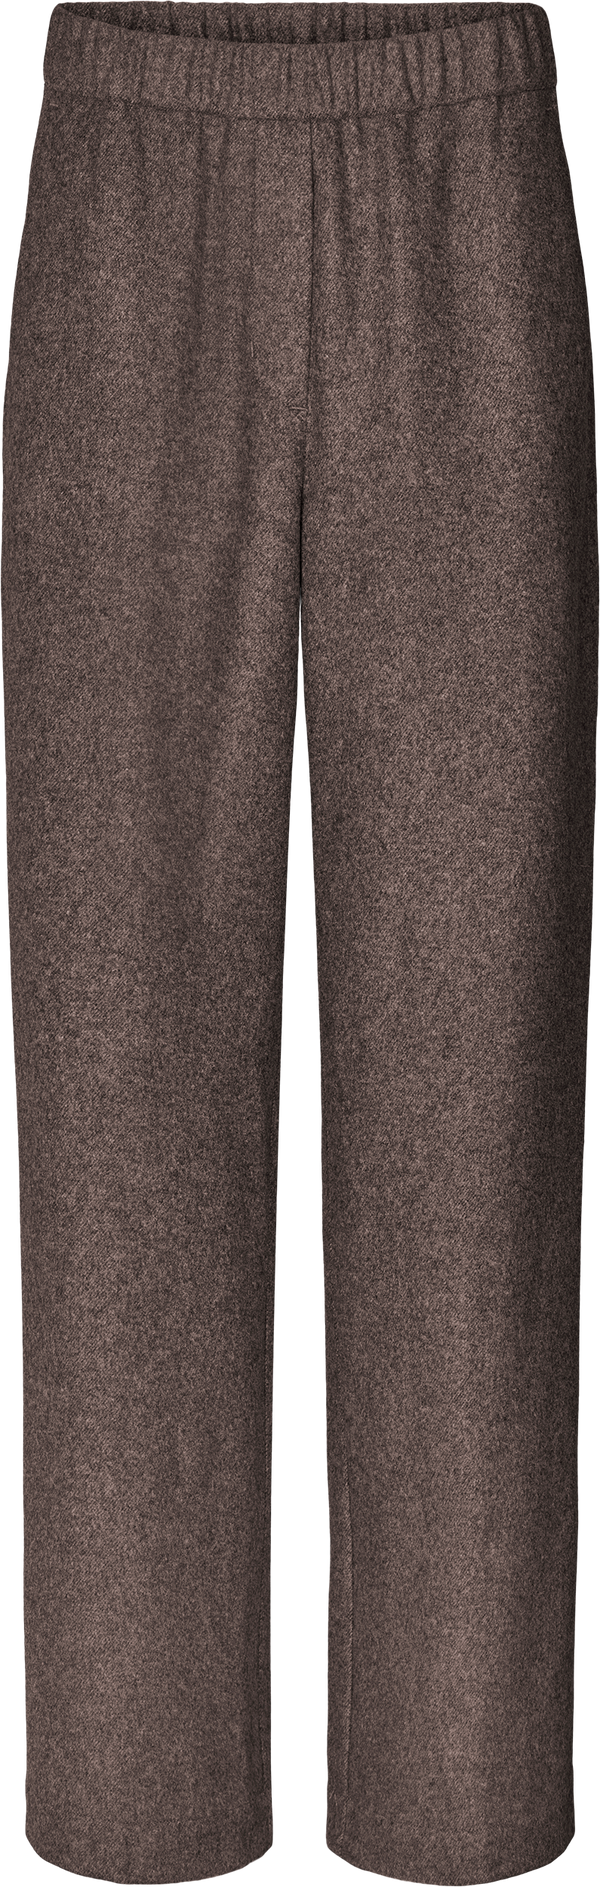 GAI+LISVA Lea Pant Pants & Shorts 960 Shitake